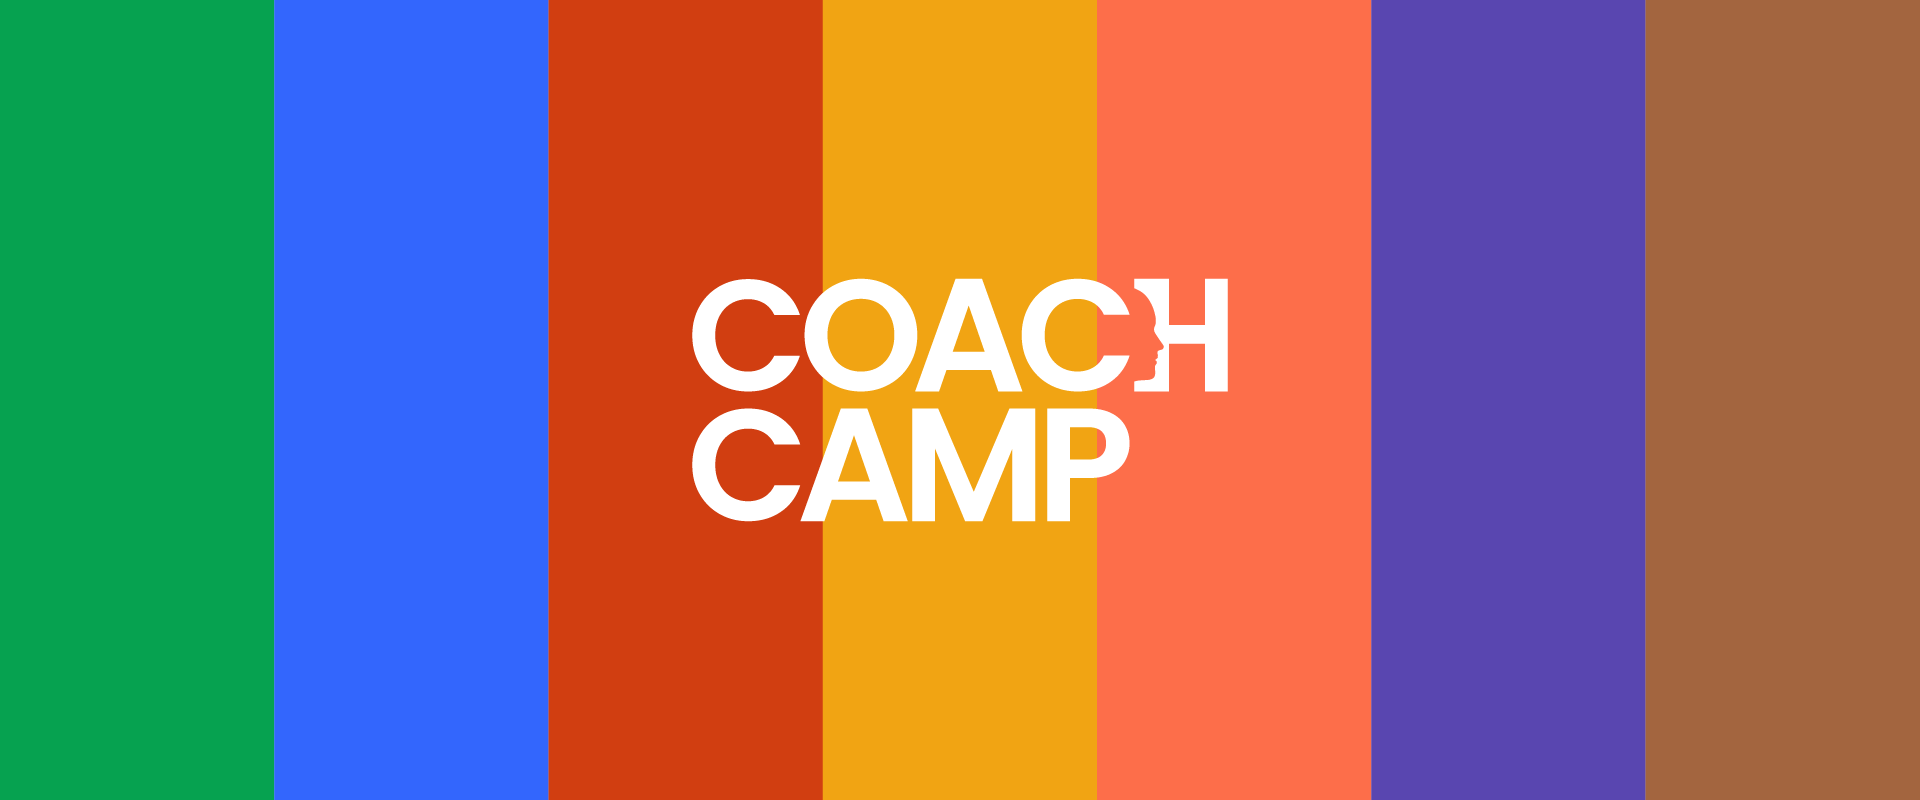 Coach camp